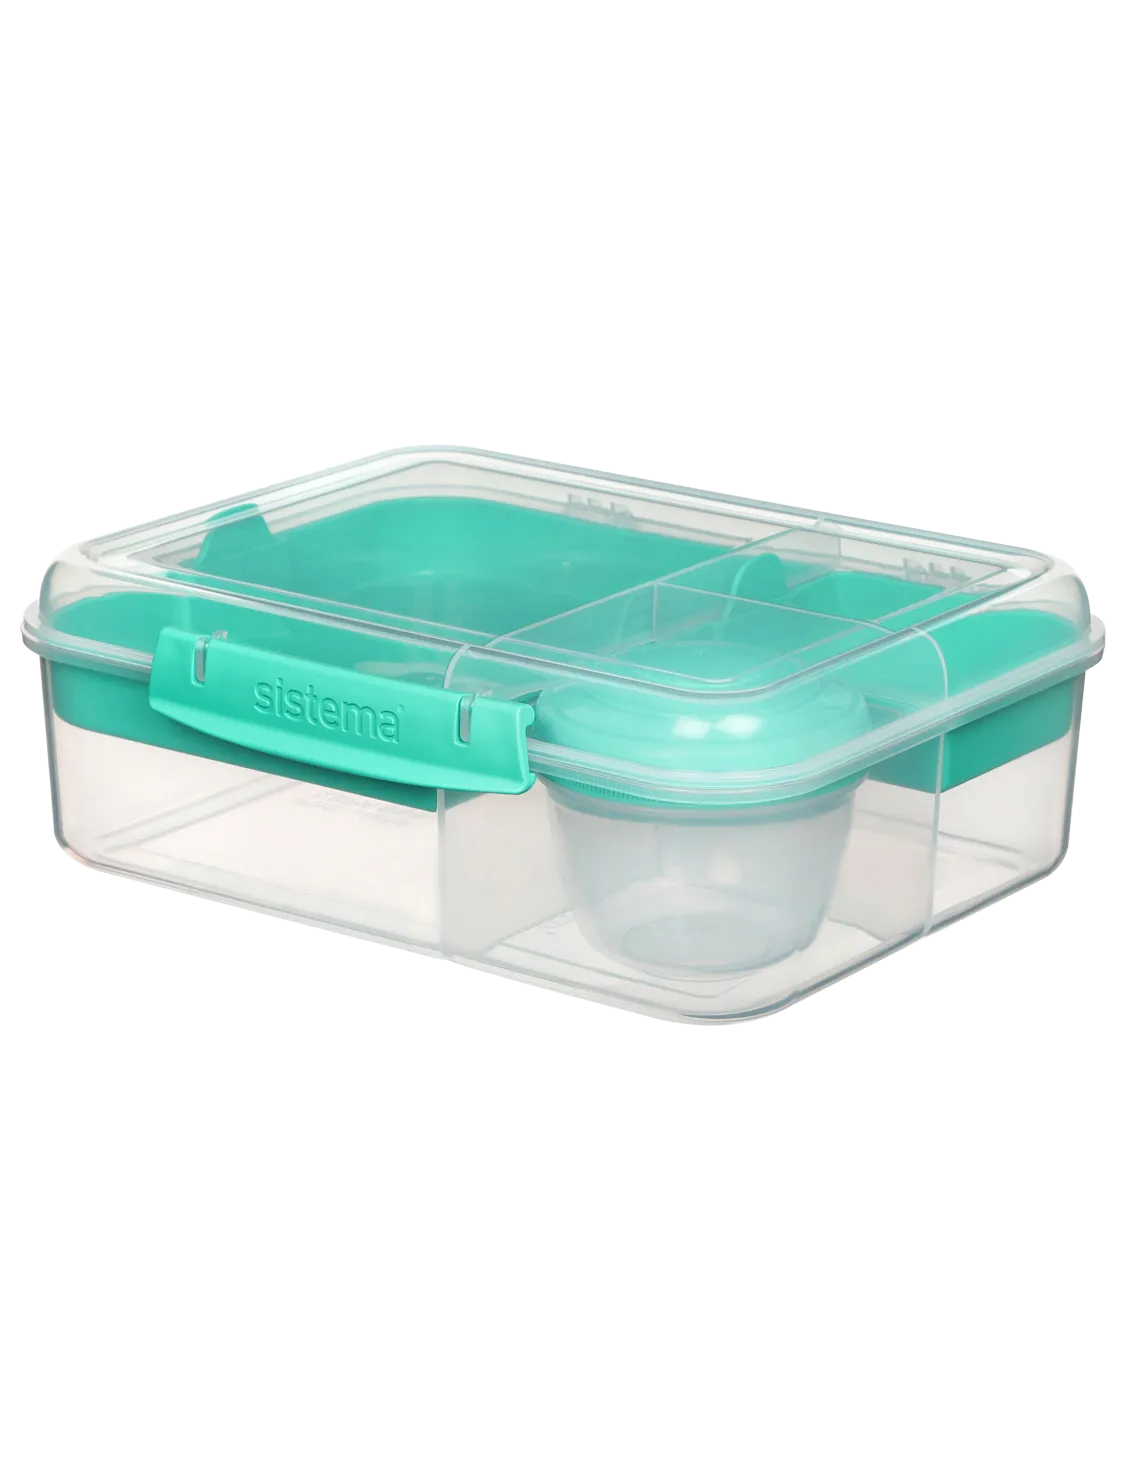 קופסת אוכל מחולקת שקופה בנטו בינוני 1.65 ליטר - סיסטמה Sistema